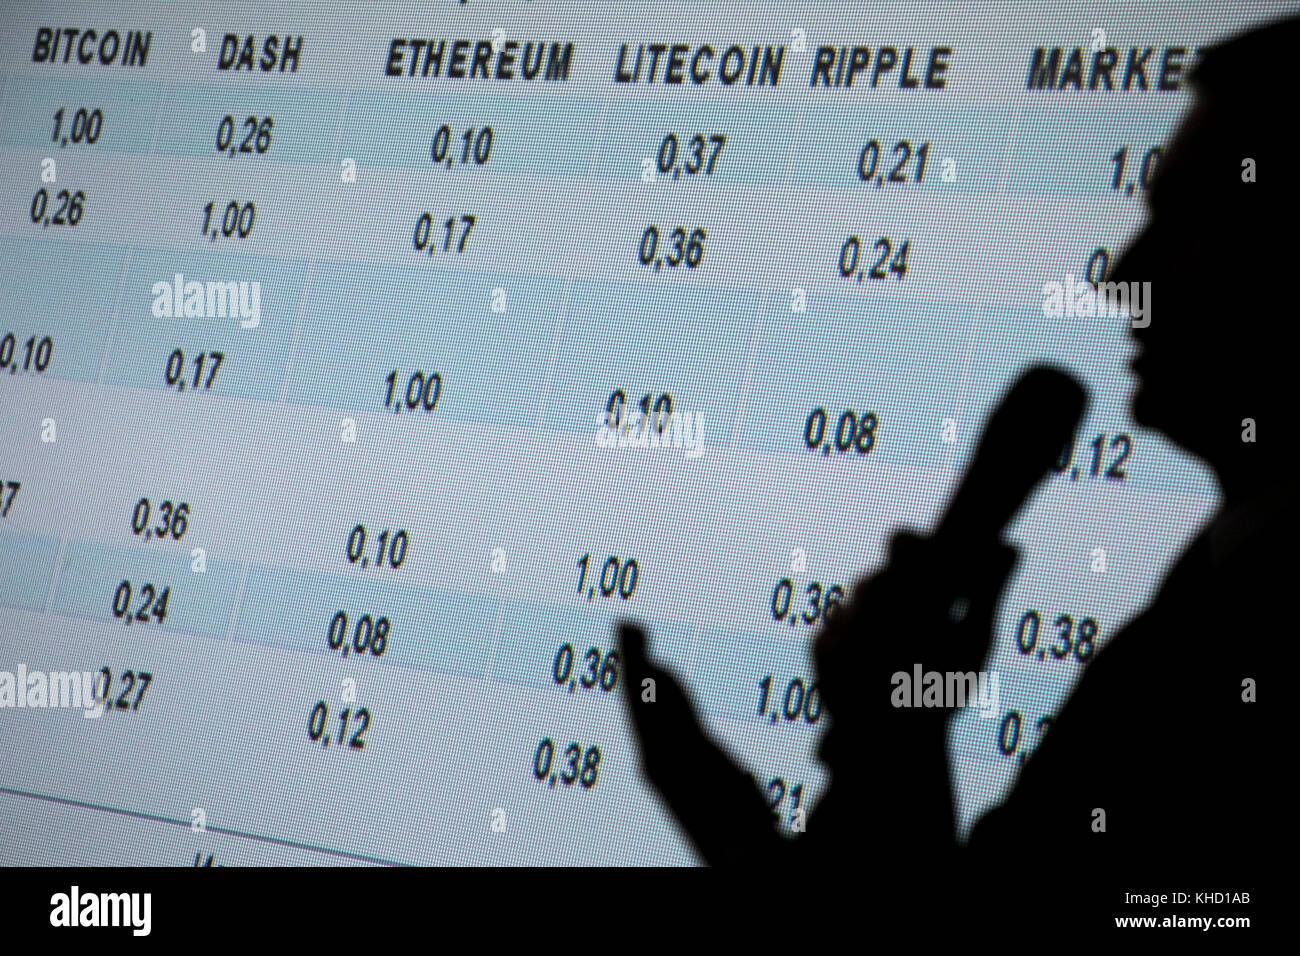 Un orador en una presentación de la situación actual con los principales crypto-monedas en el mercado sobre la conferencia y Blockchine Bitcoin Foto de stock